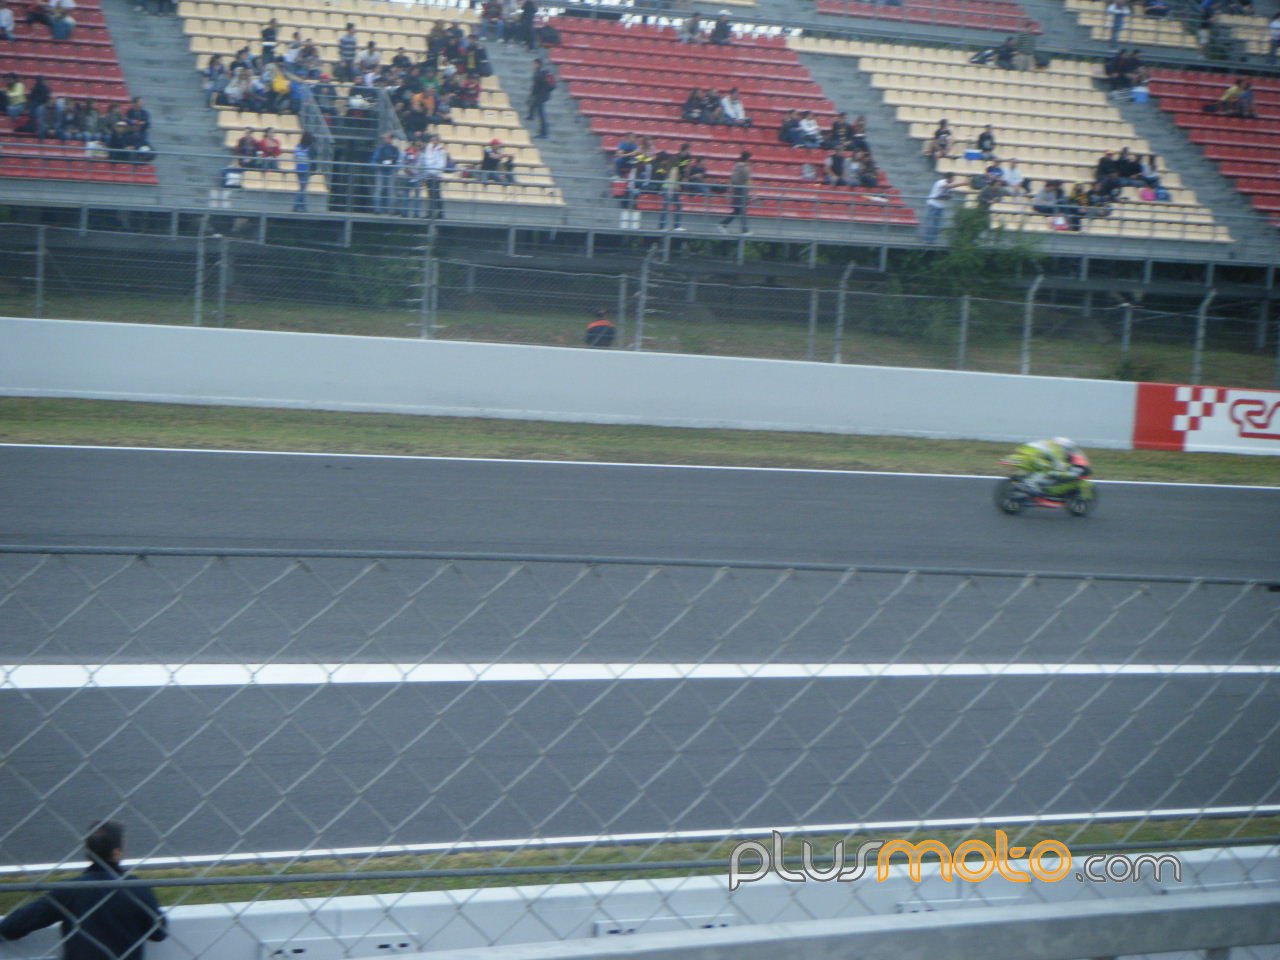 Terol en carrera 125cc Catalunya